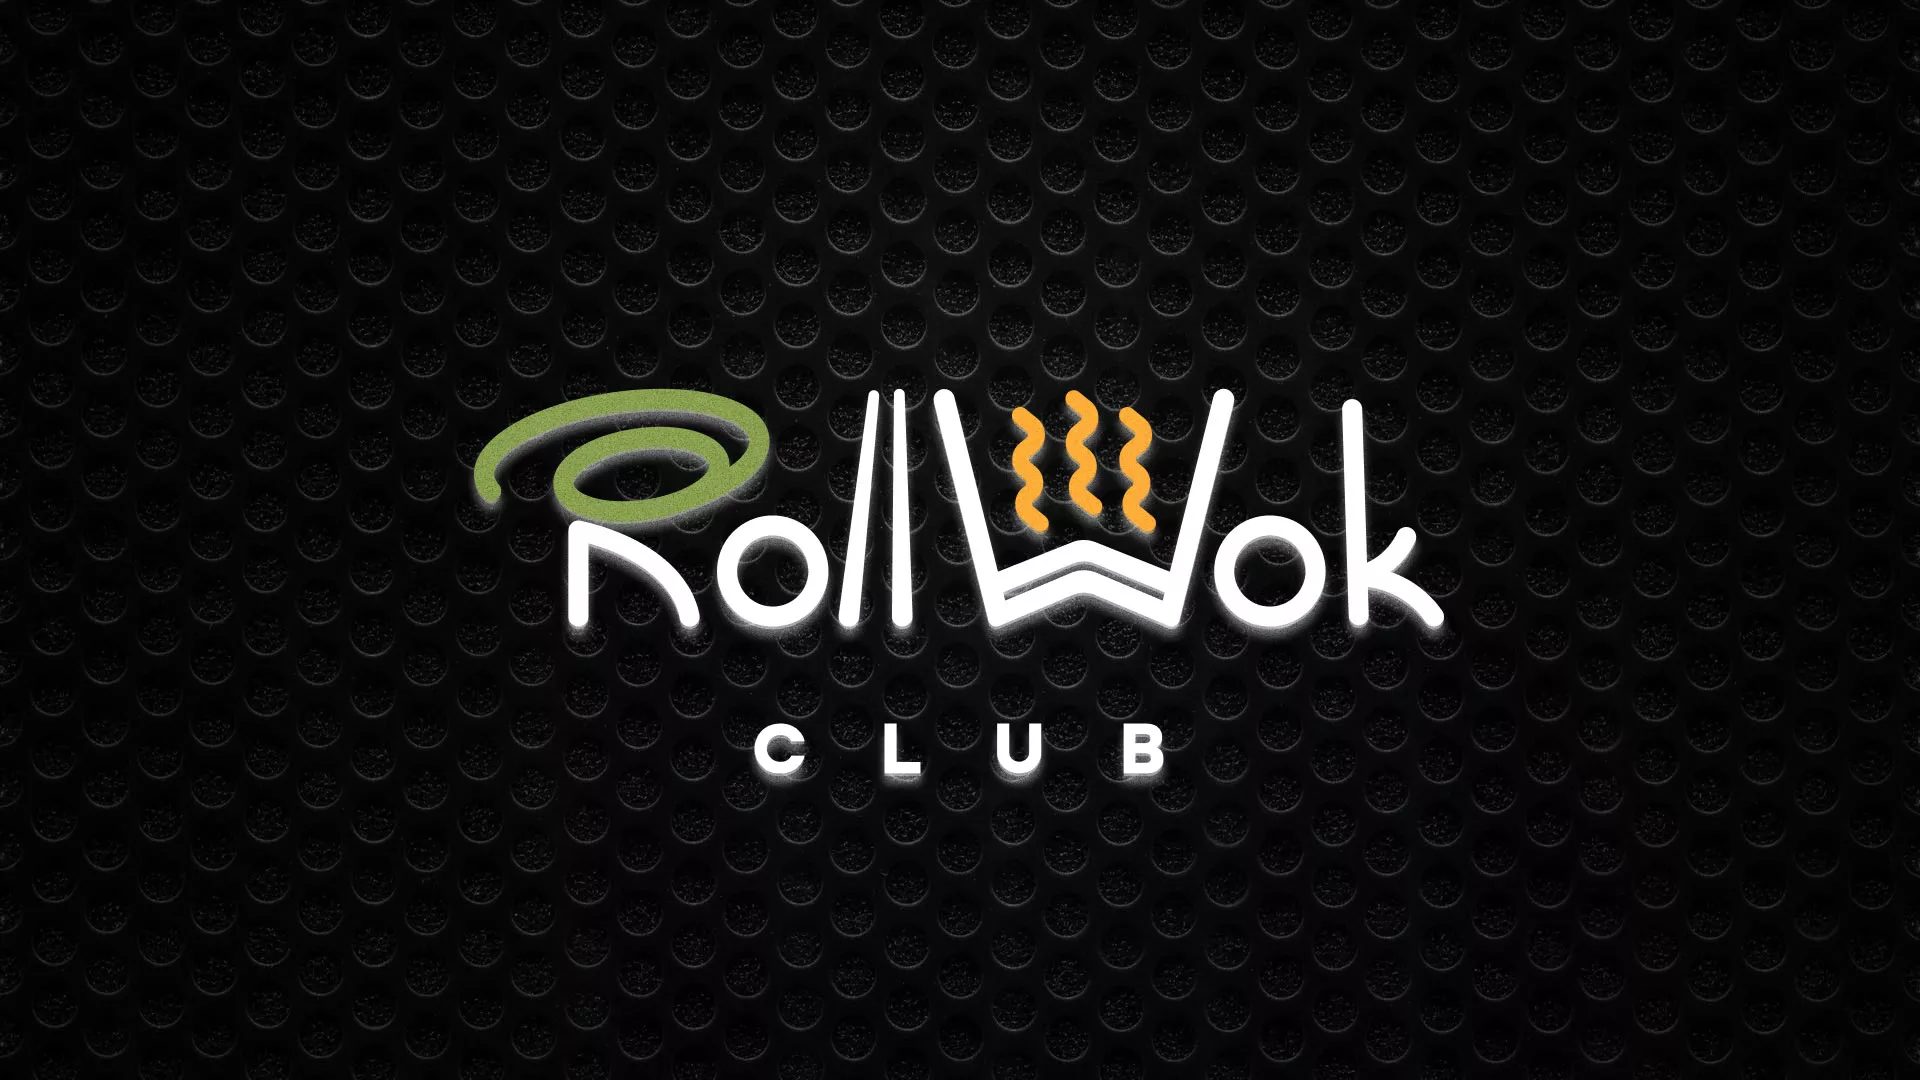 Брендирование торговых точек суши-бара «Roll Wok Club» в Липецке